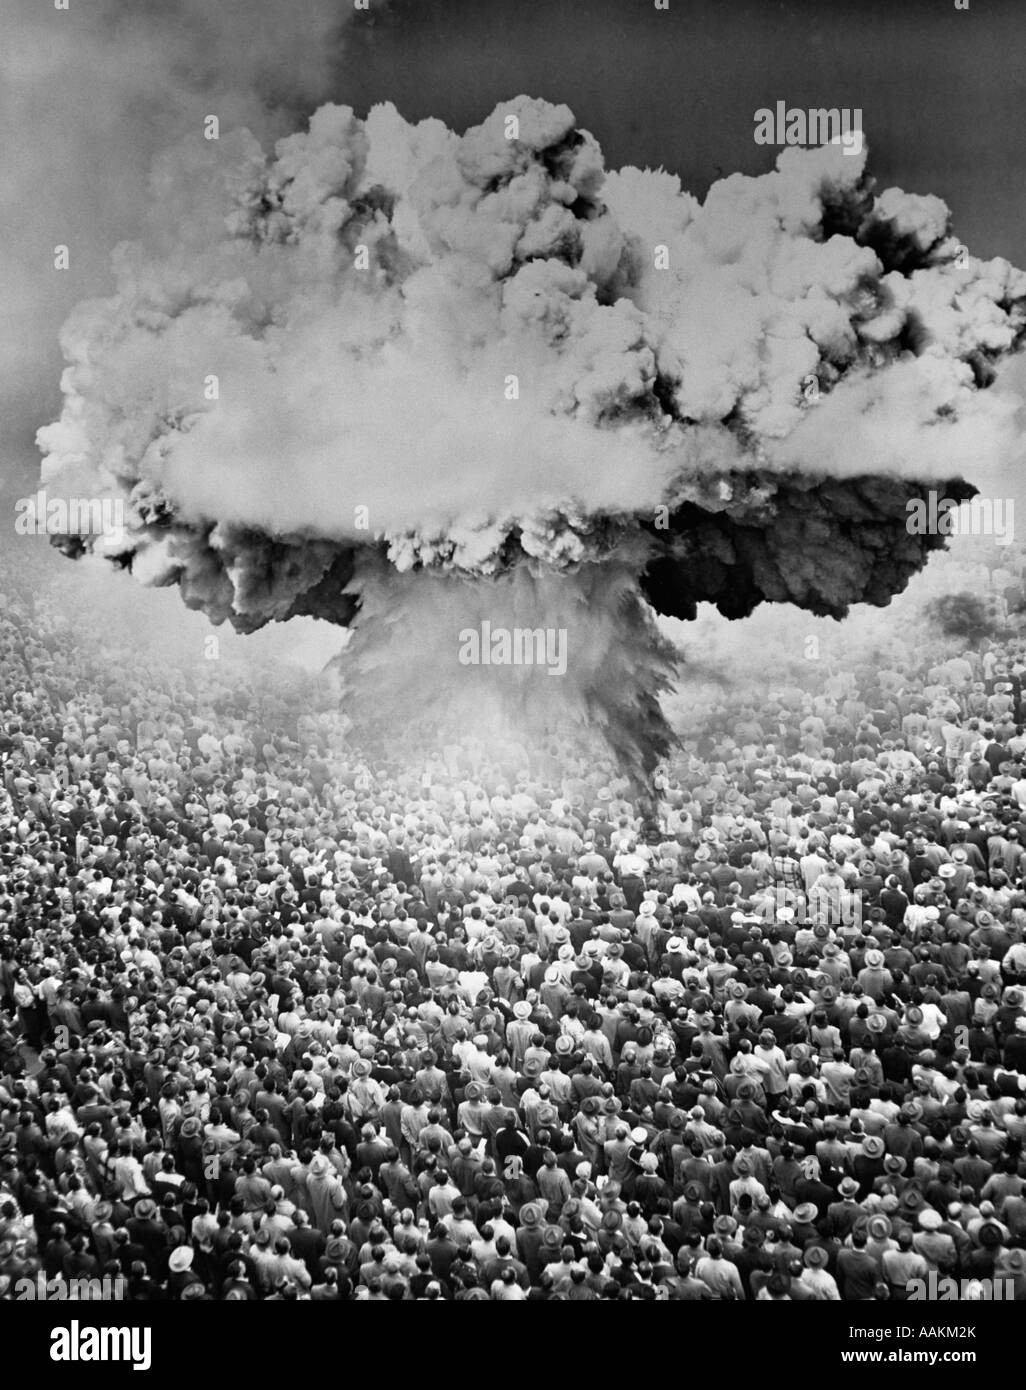 Années 1950 Années 1960 BOMBE ATOMIQUE CHAMPIGNON MONTAGE SYMBOLIQUE SUR UNE TRÈS GRANDE FOULE DE PERSONNES CONFRONTÉES À L'EXPLOSION Banque D'Images